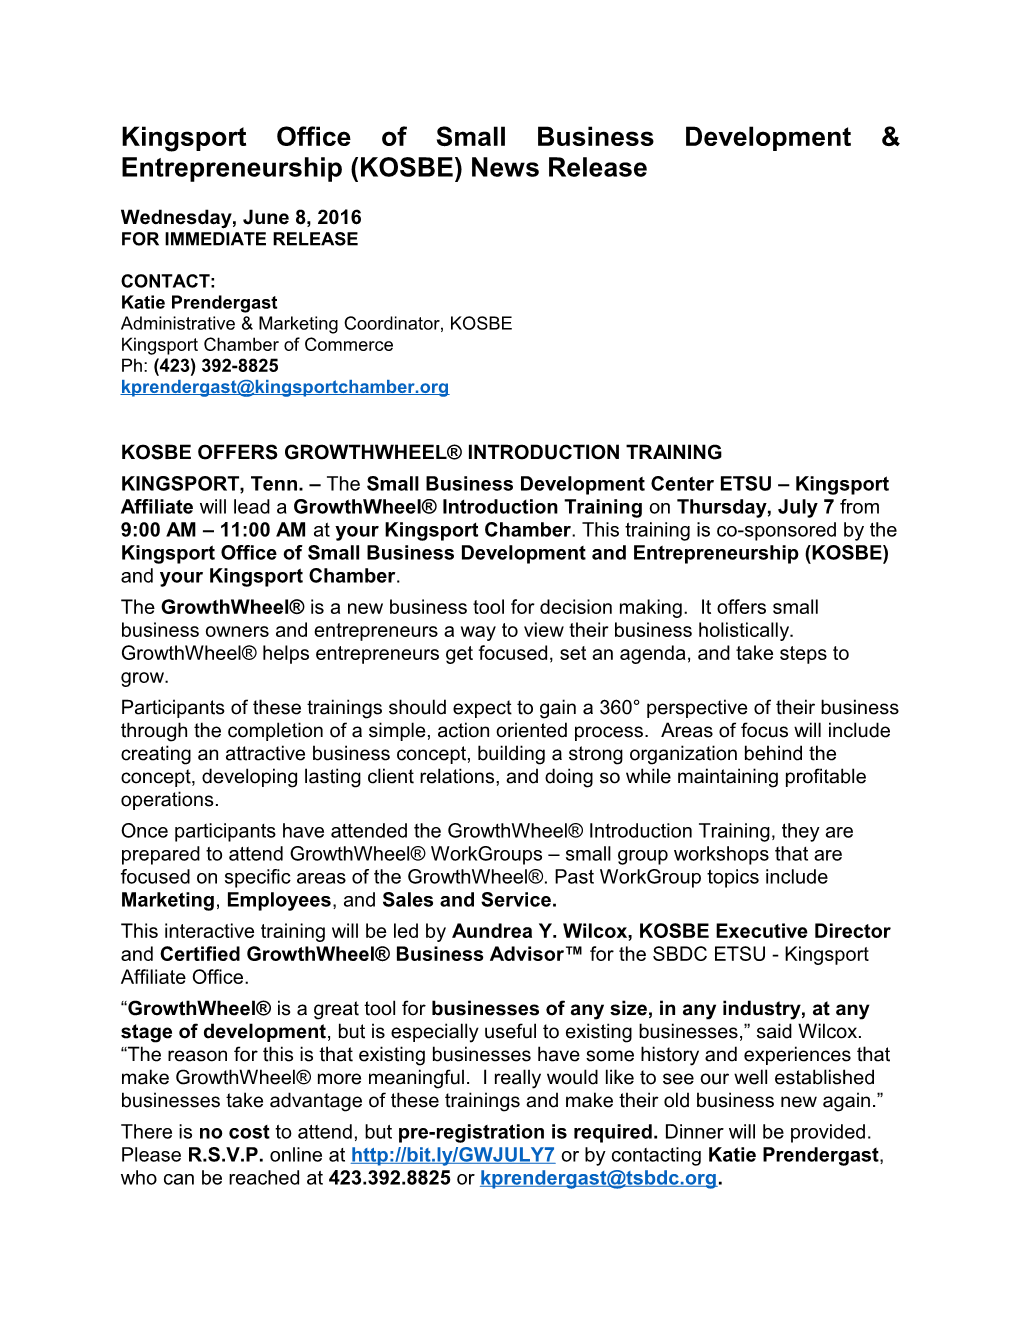 Kingsport Office of Small Business Development & Entrepreneurship (KOSBE) News Release